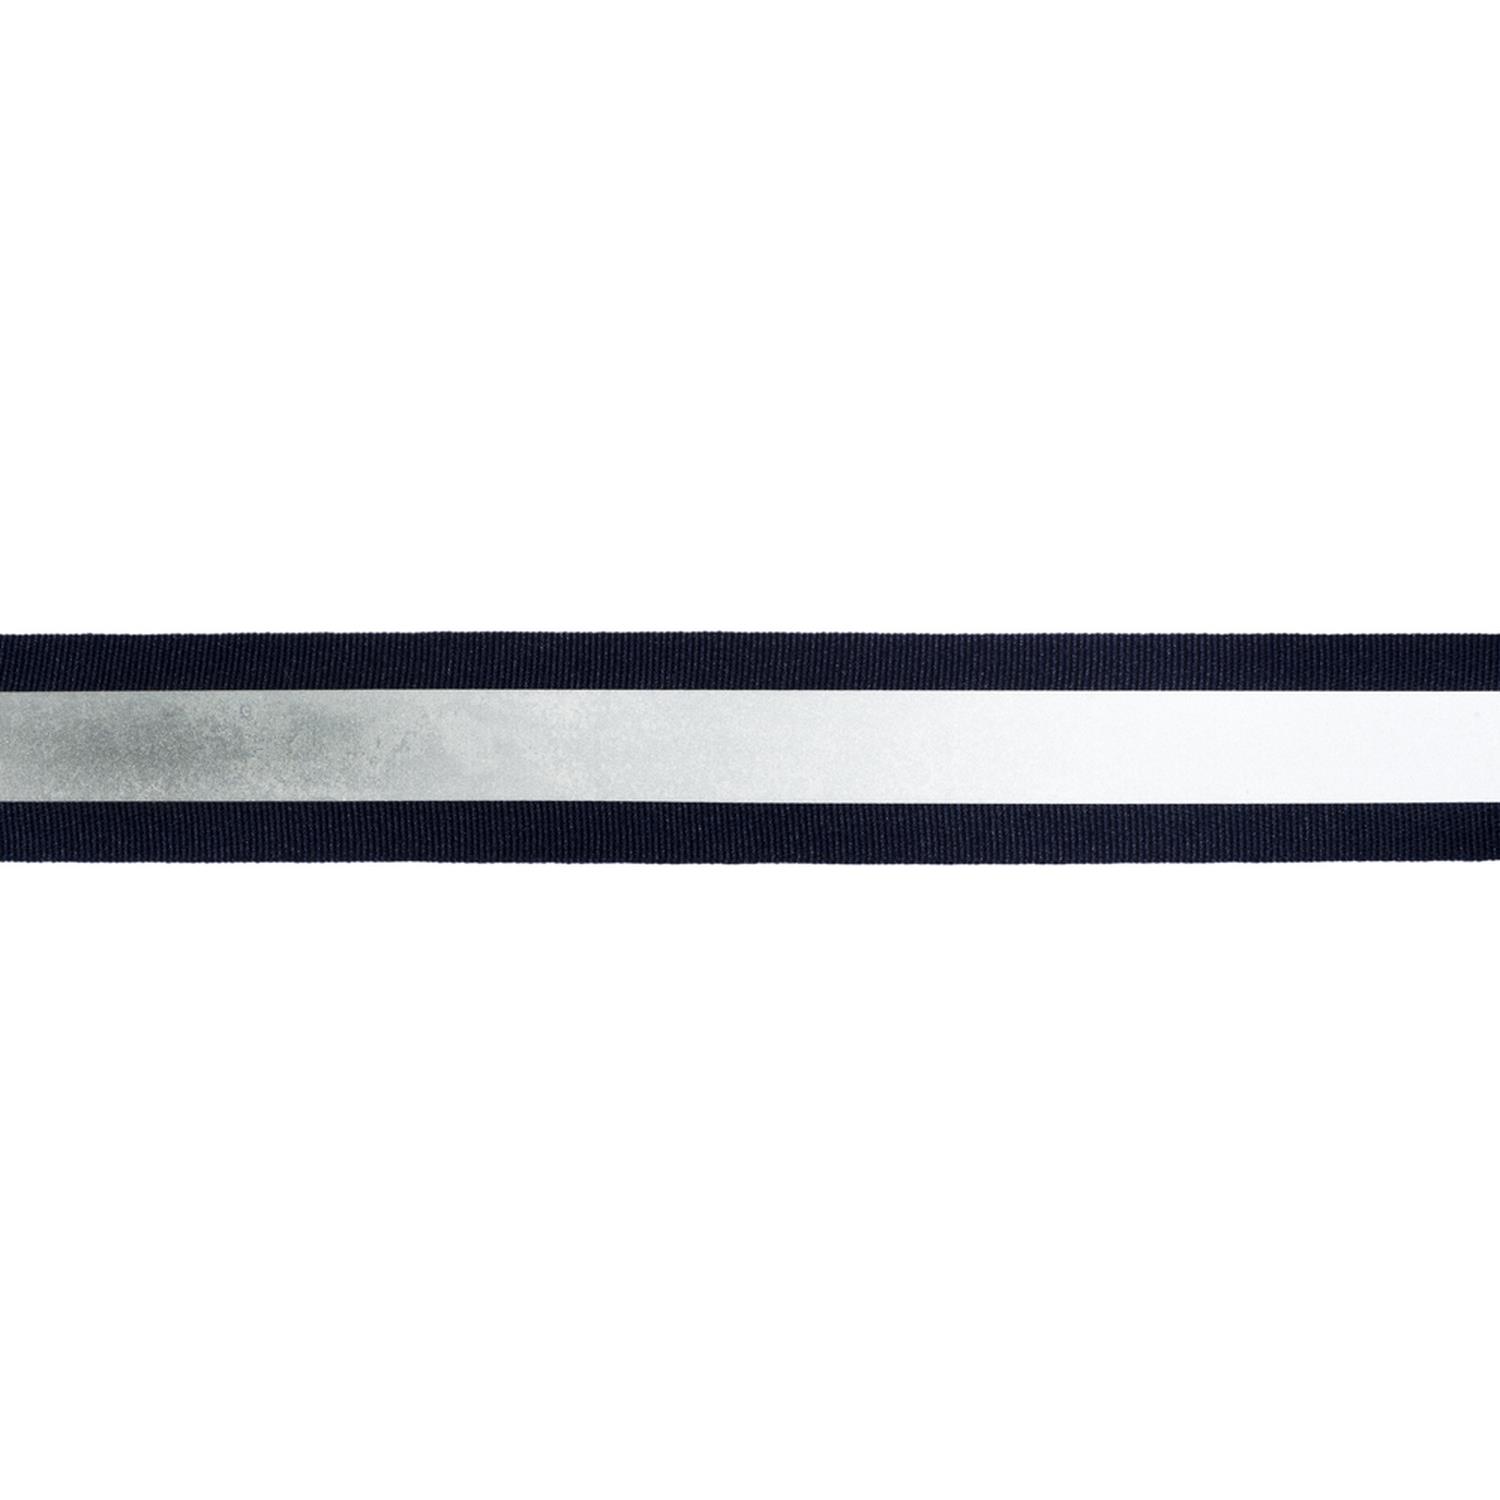 Reflektorband 25mm breit in 3 Farben schwarz-silber 10 Meter